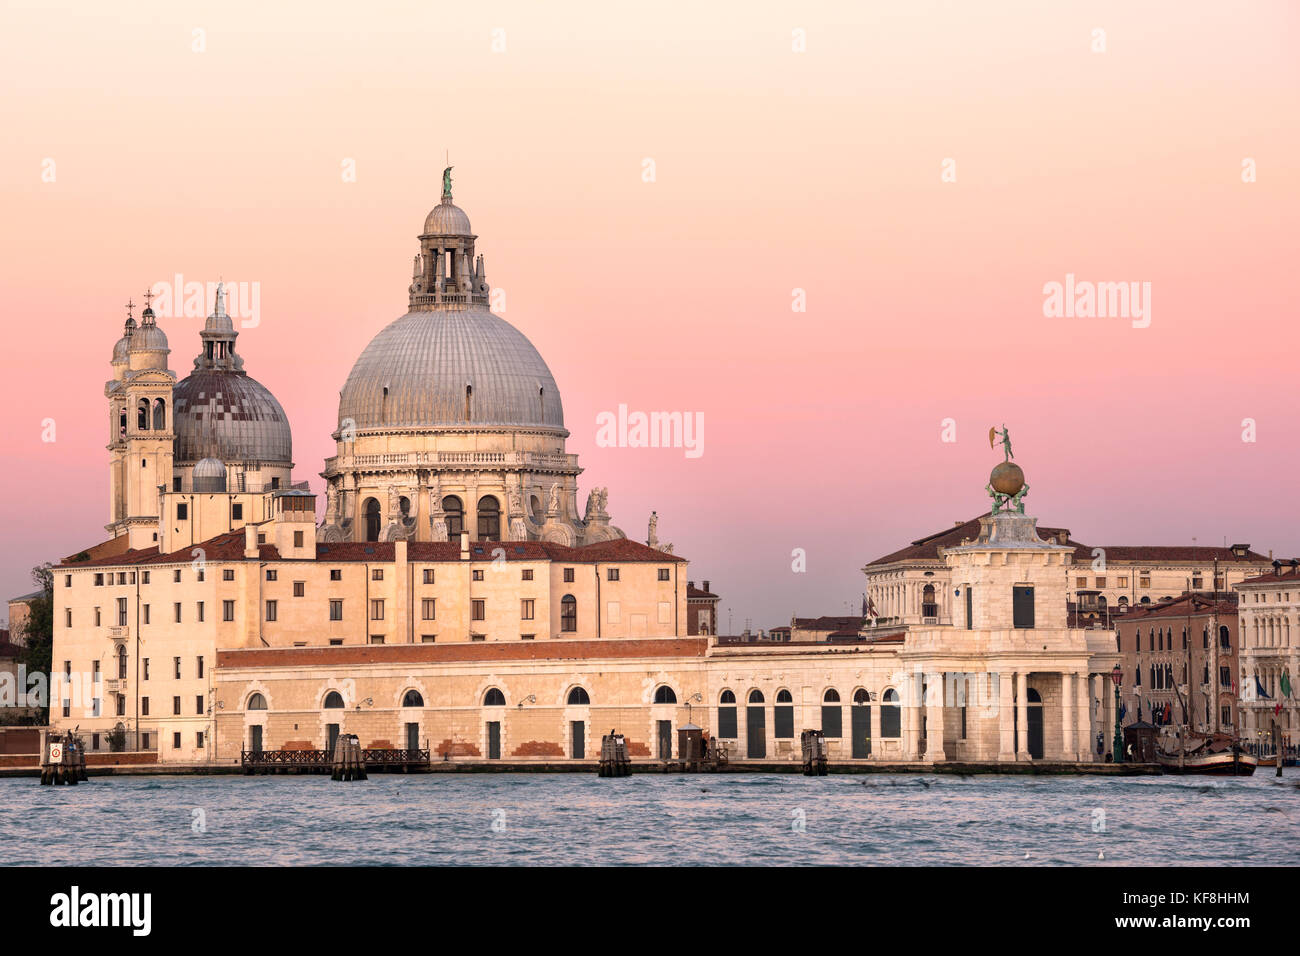 Basilica di Santa Maria della Salute at dawn, Venice, Italy Stock Photo